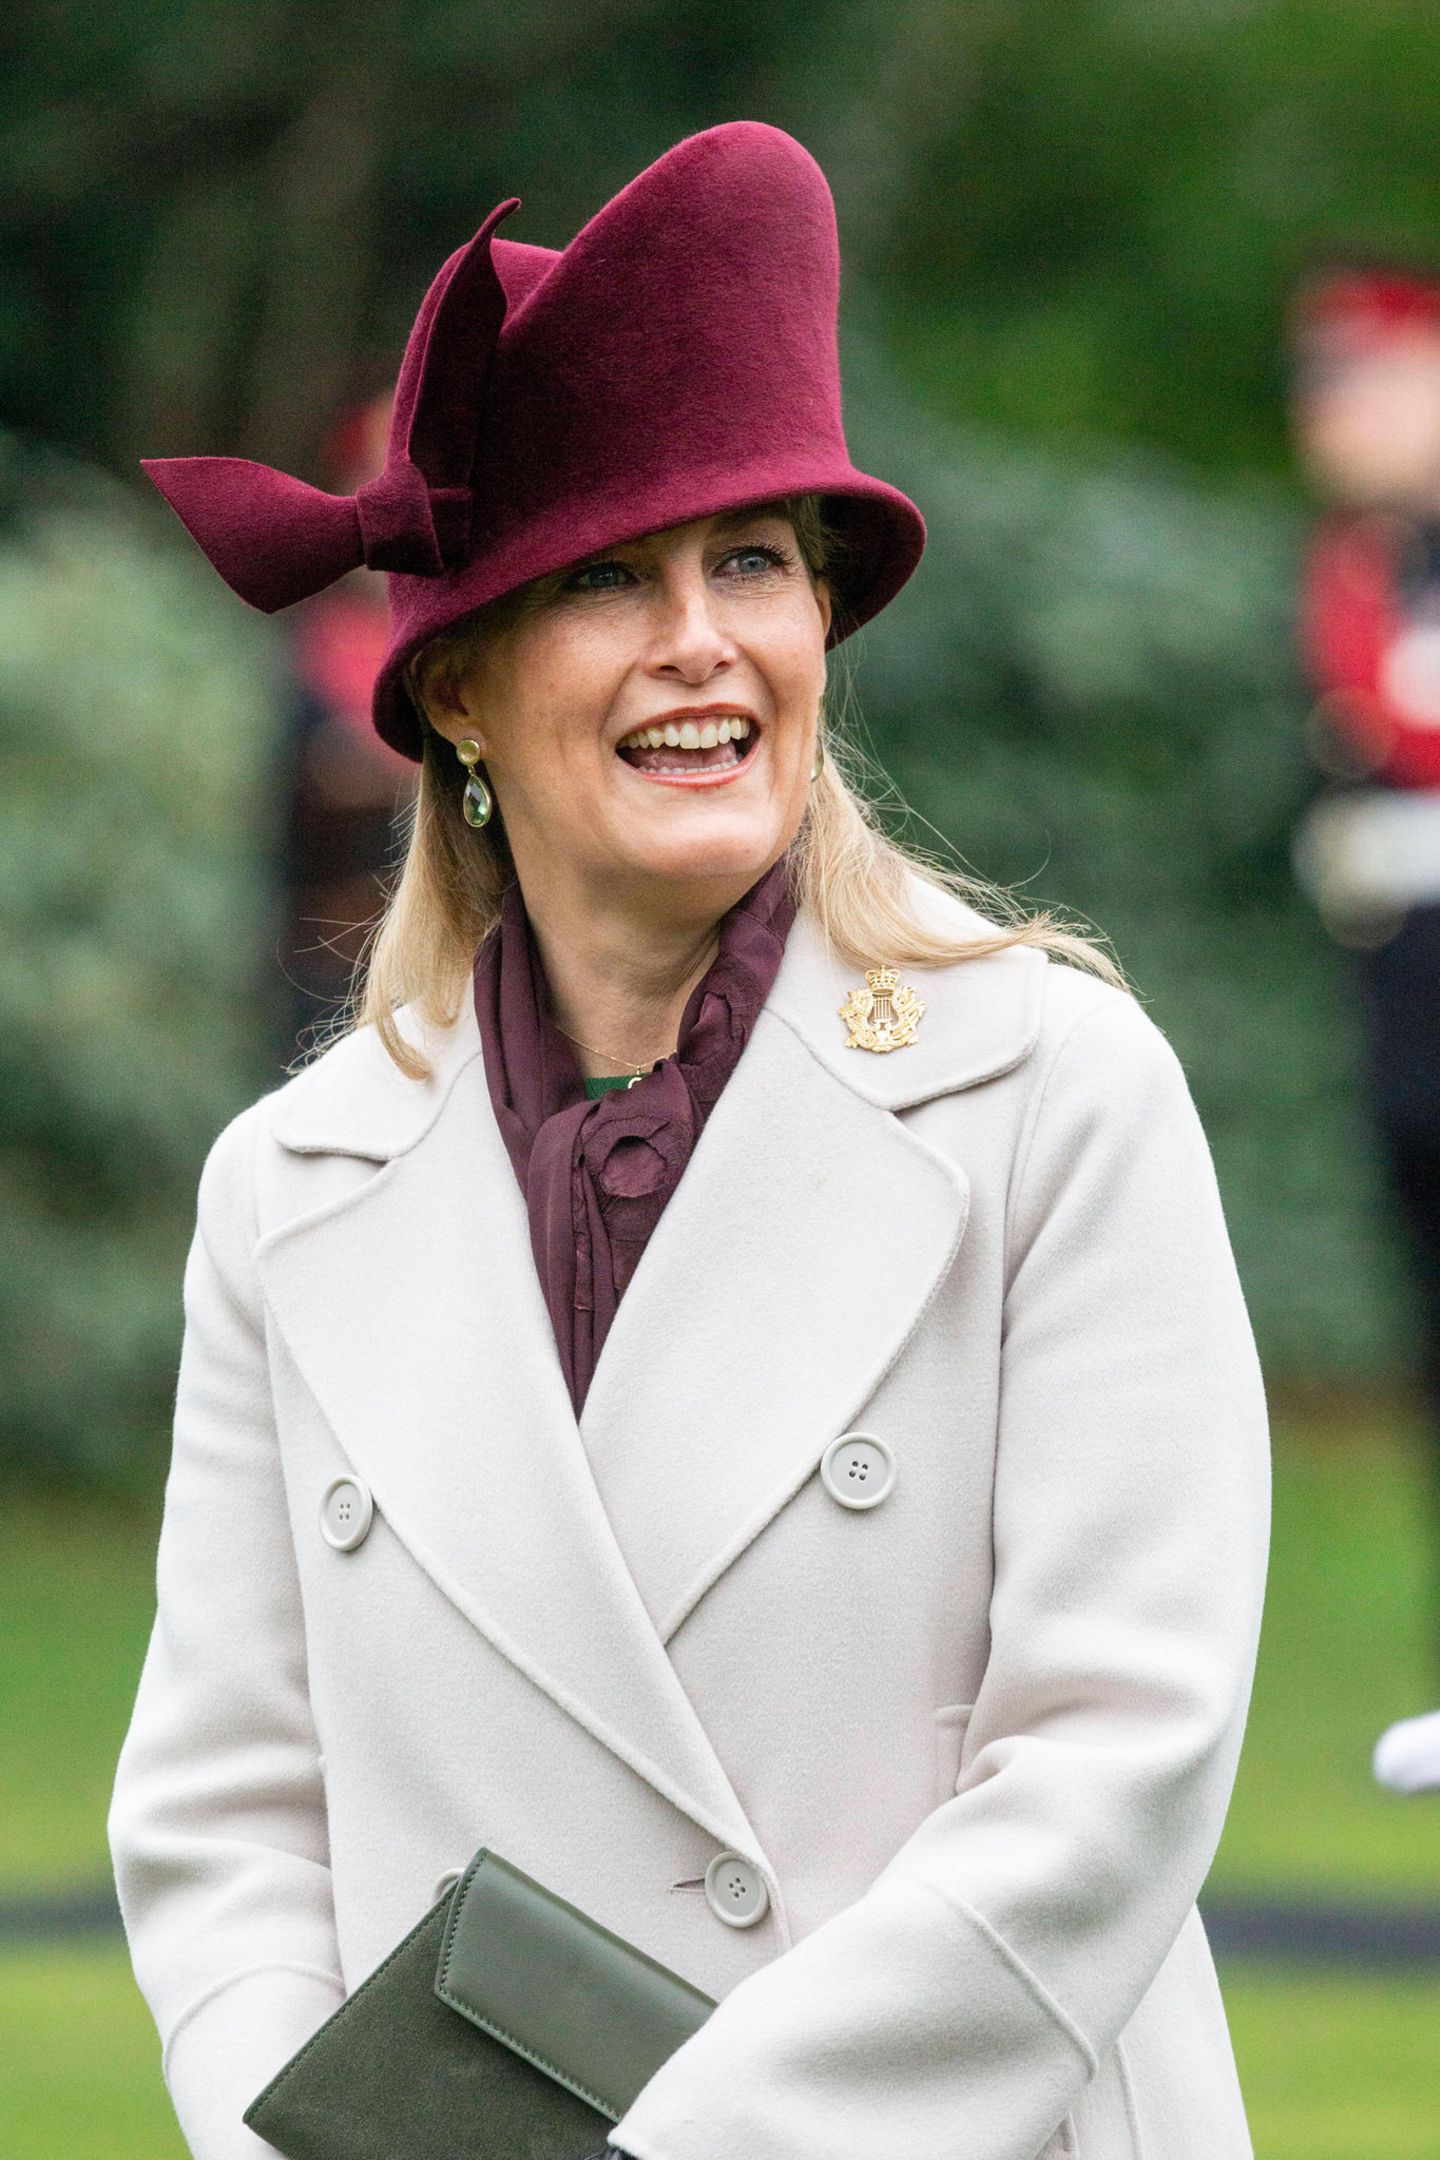 Die Größe und Form des mit roten Samt überzogenen Huts ist beachtlich. Ein skurriler Blickfang, den wir zuvor an der 55-Jährige noch nicht gesehen haben. Ob wir ihn ein zweites Mal an der Gräfin von Wessex sehen werden? Wir sind gespannt. 